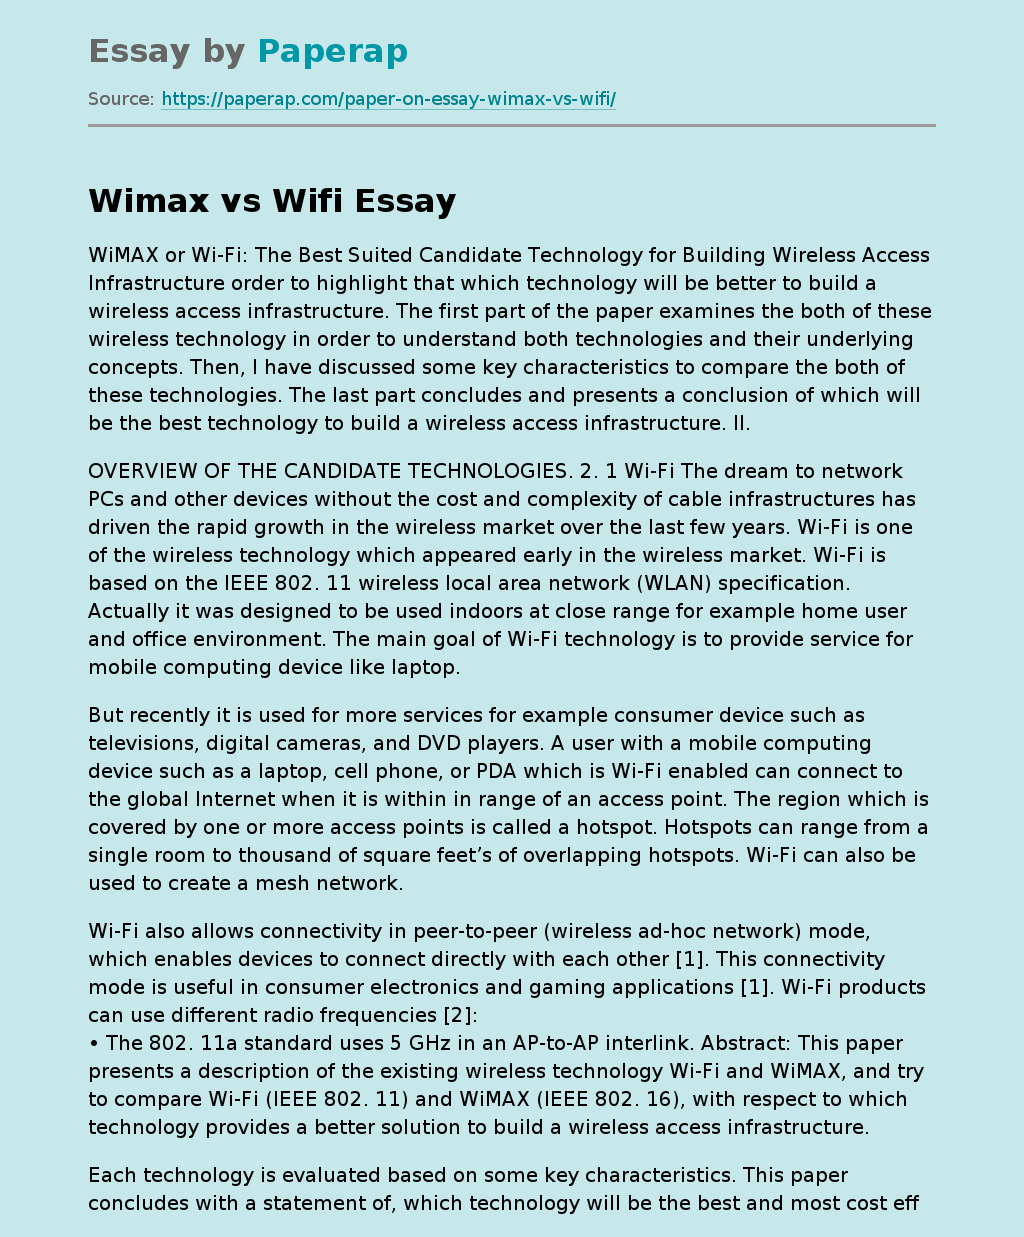 Comparison of Wimax vs WiFi Technologies